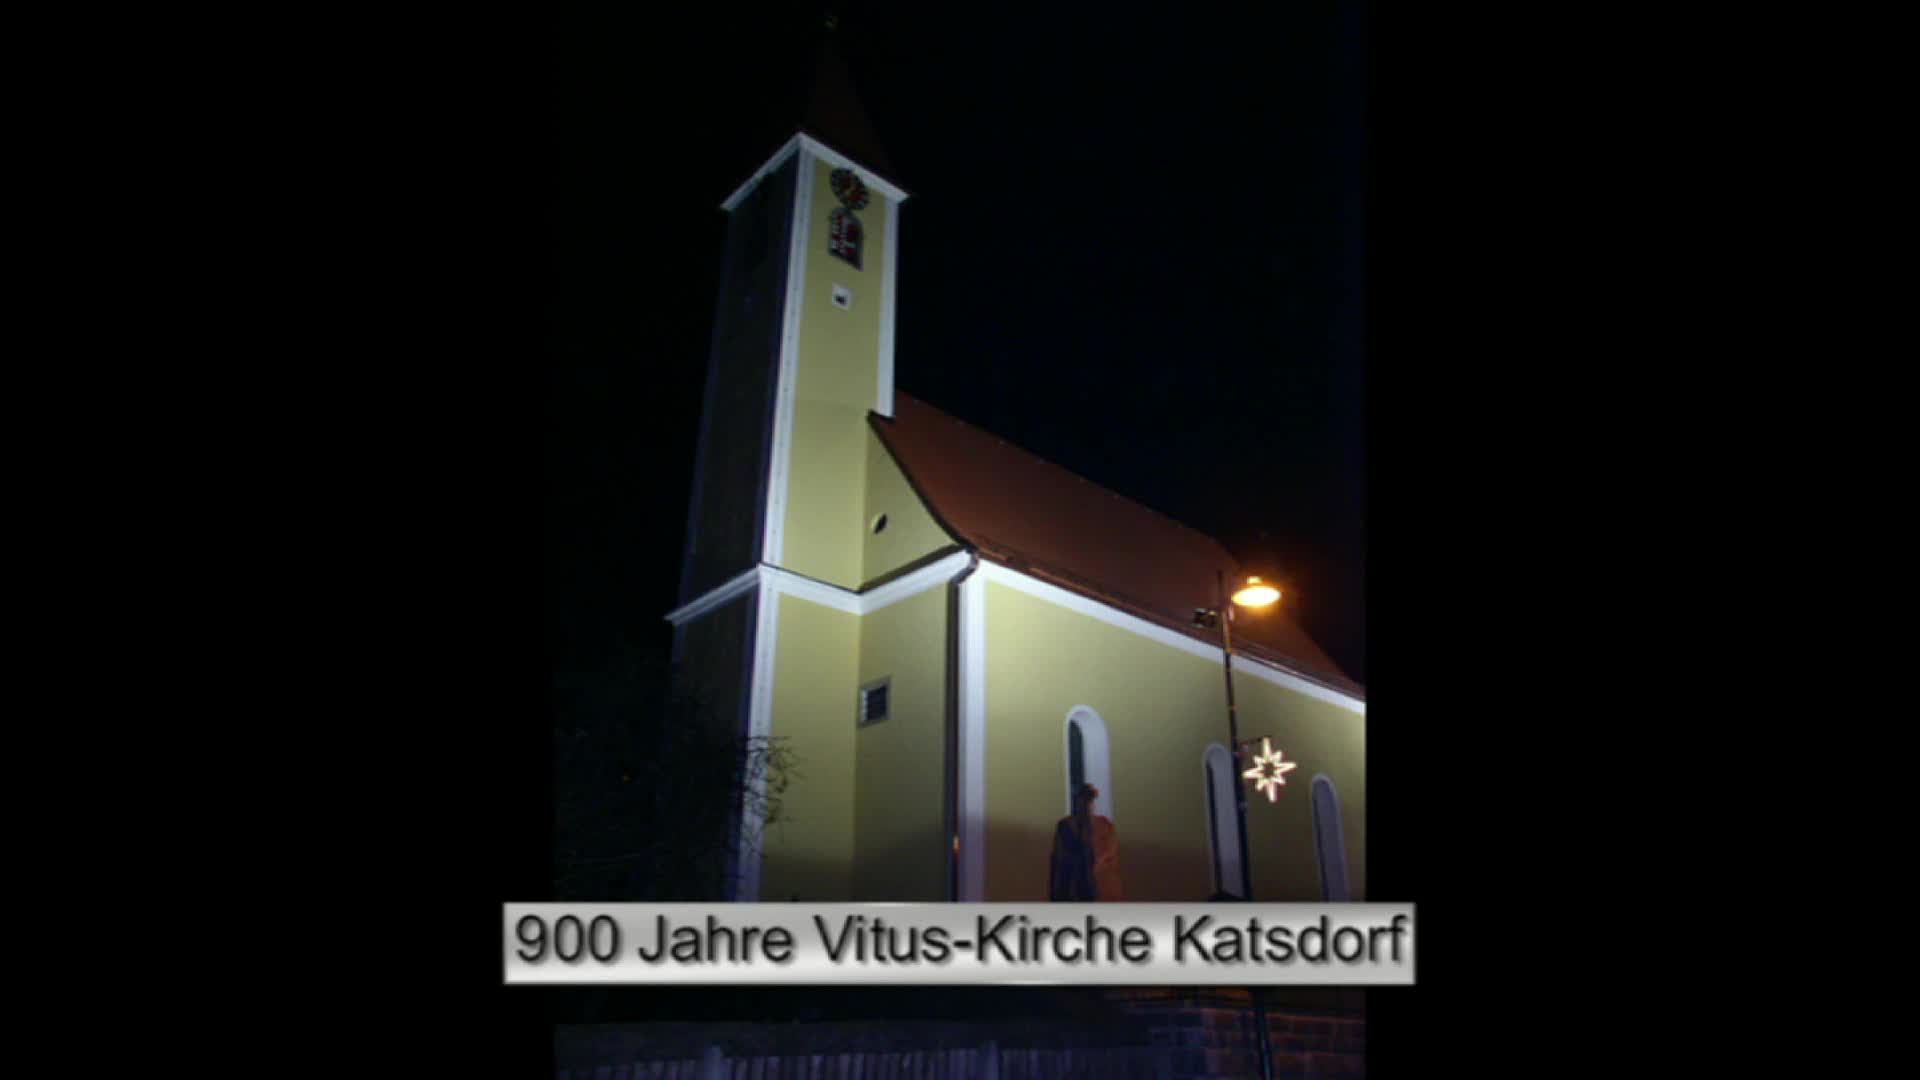 900 Jahre Vitus-Kirche Katsdorf